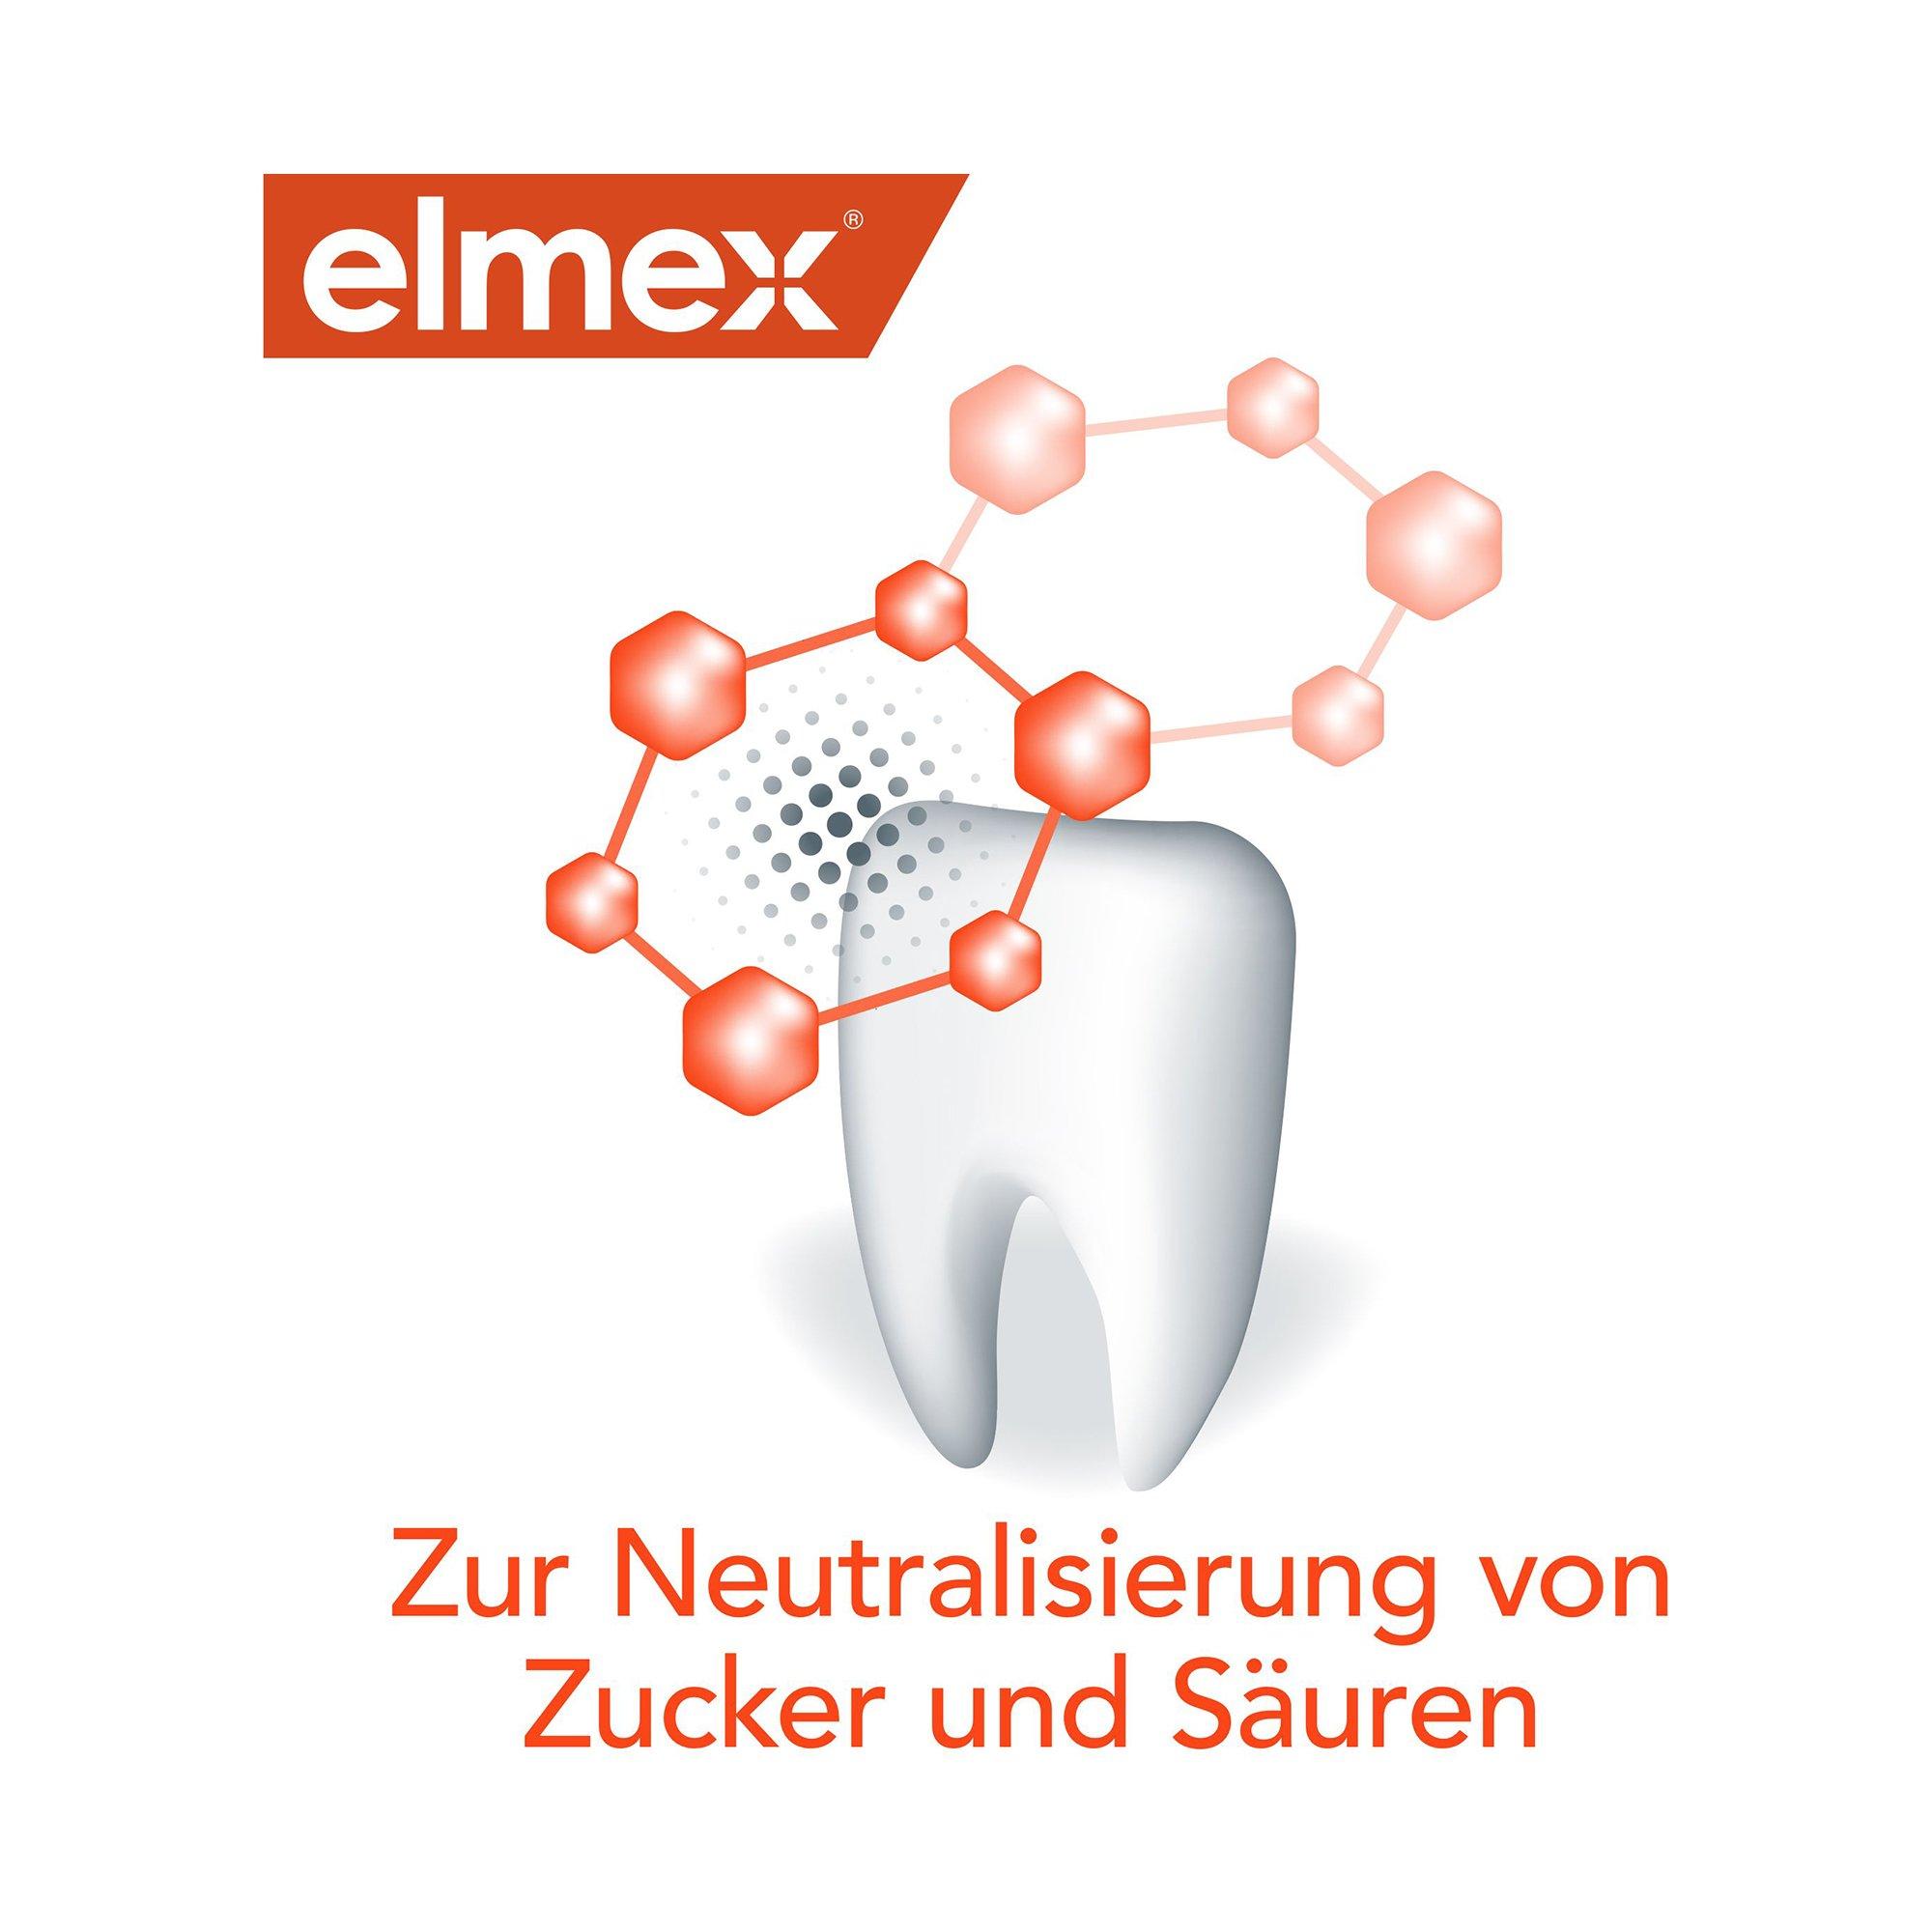 elmex KARIESSCHUTZ PROFESSIONAL Kariesschutz Professional Zahnpasta, Für Hochwirksamen Kariesschutz, Duo 